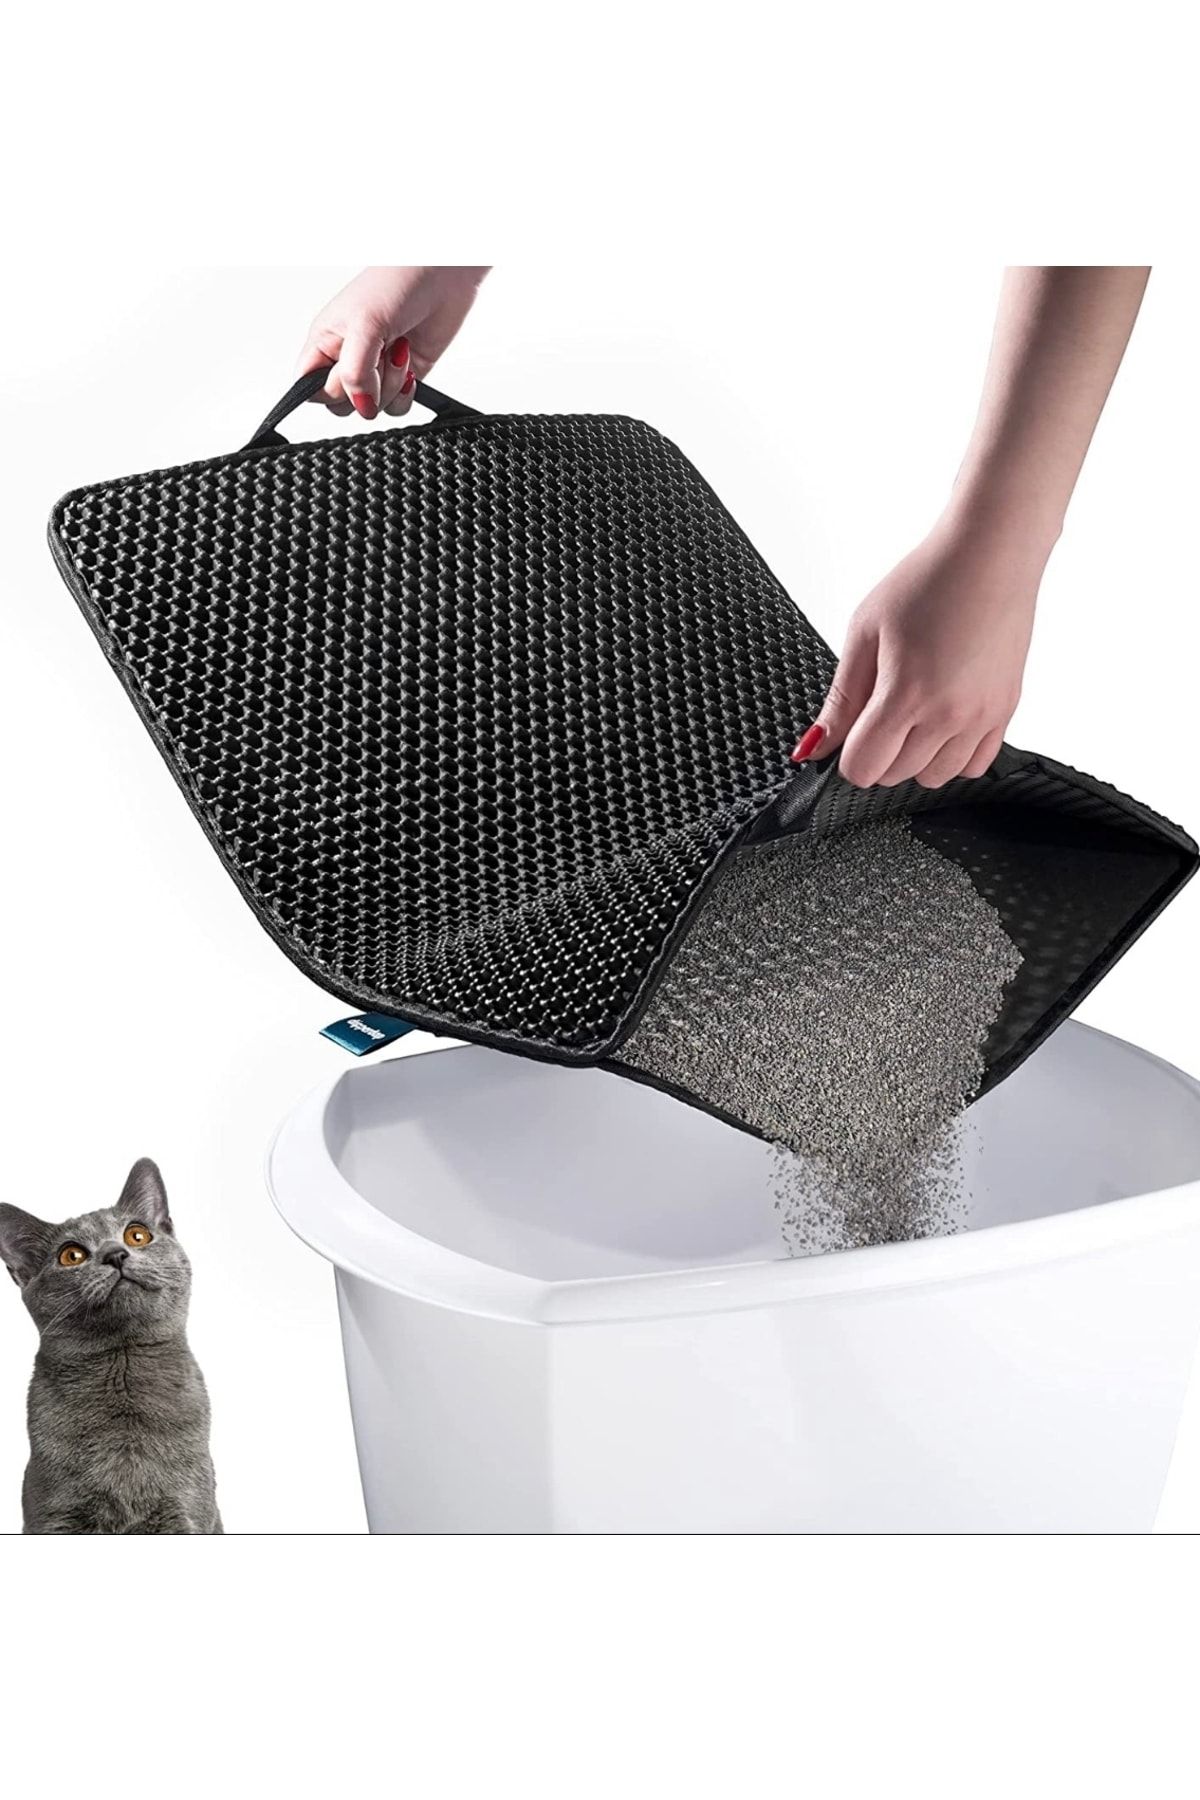 EnPet Elekli Kedi Tuvalet Önü Paspası Kedi Kumu Paspası